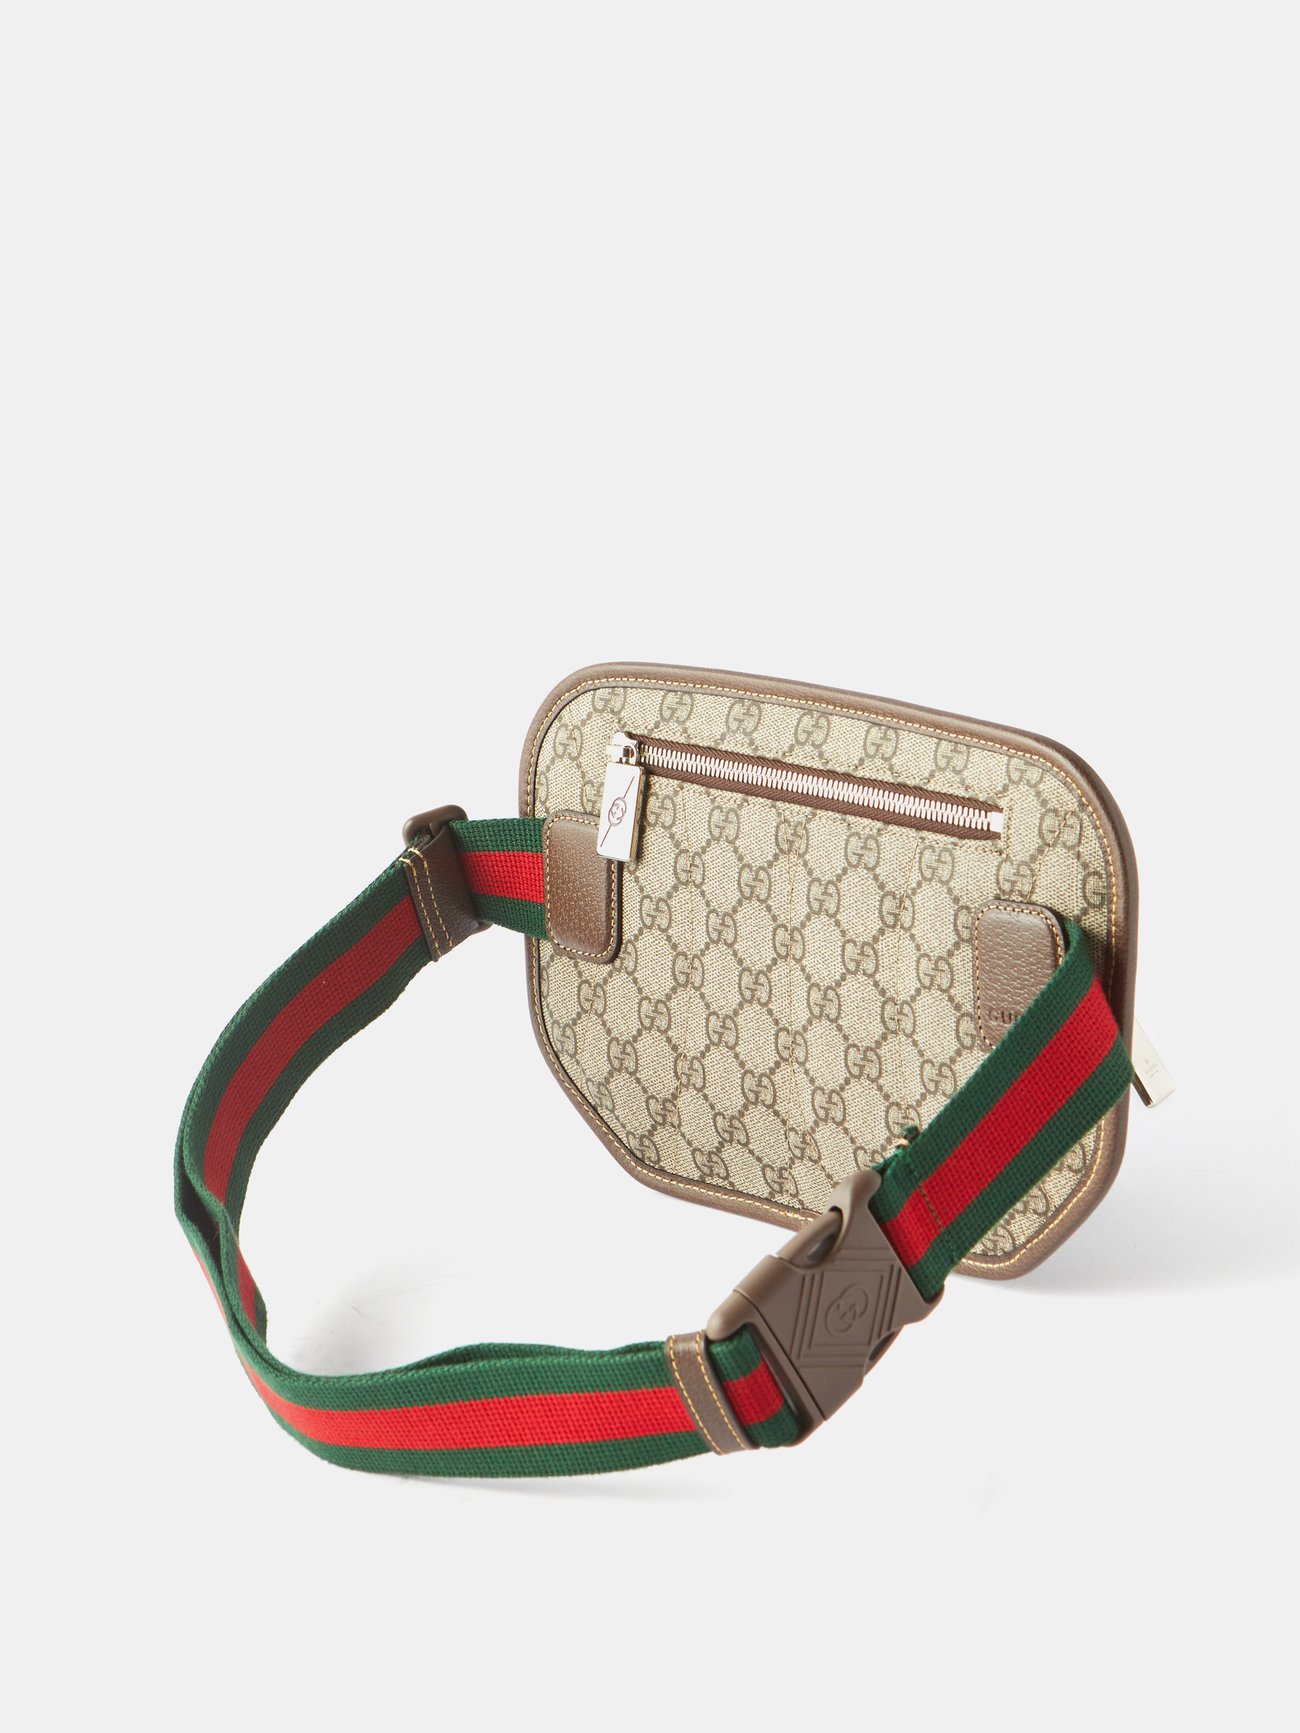 Beige brown Jumbo-GG ripstop belt bag, Gucci